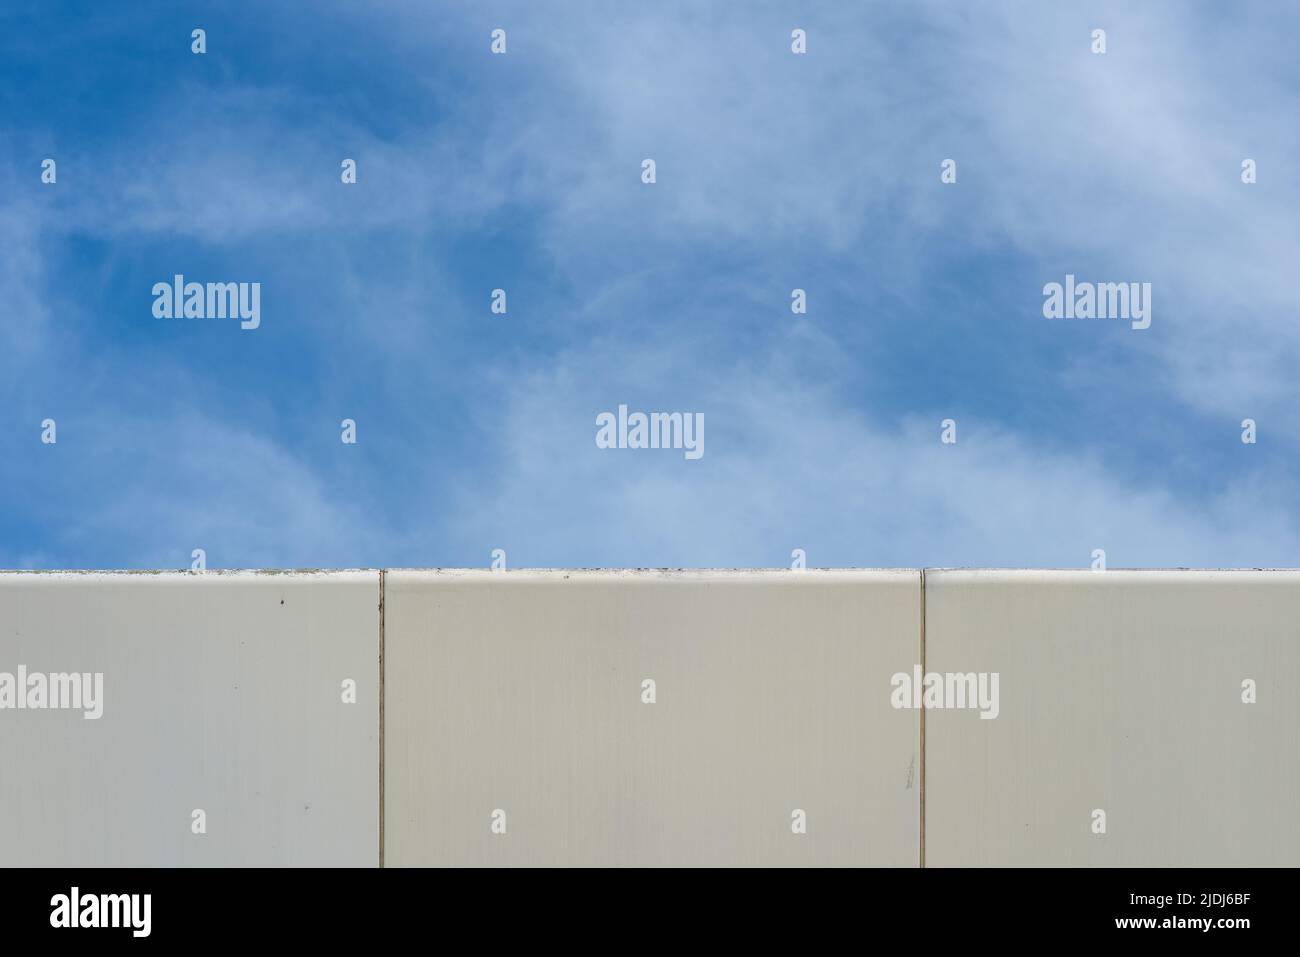 Immagine astratta, l'angolo di un edificio moderno che contrasta con il cielo blu e le nuvole bianche. Foto Stock